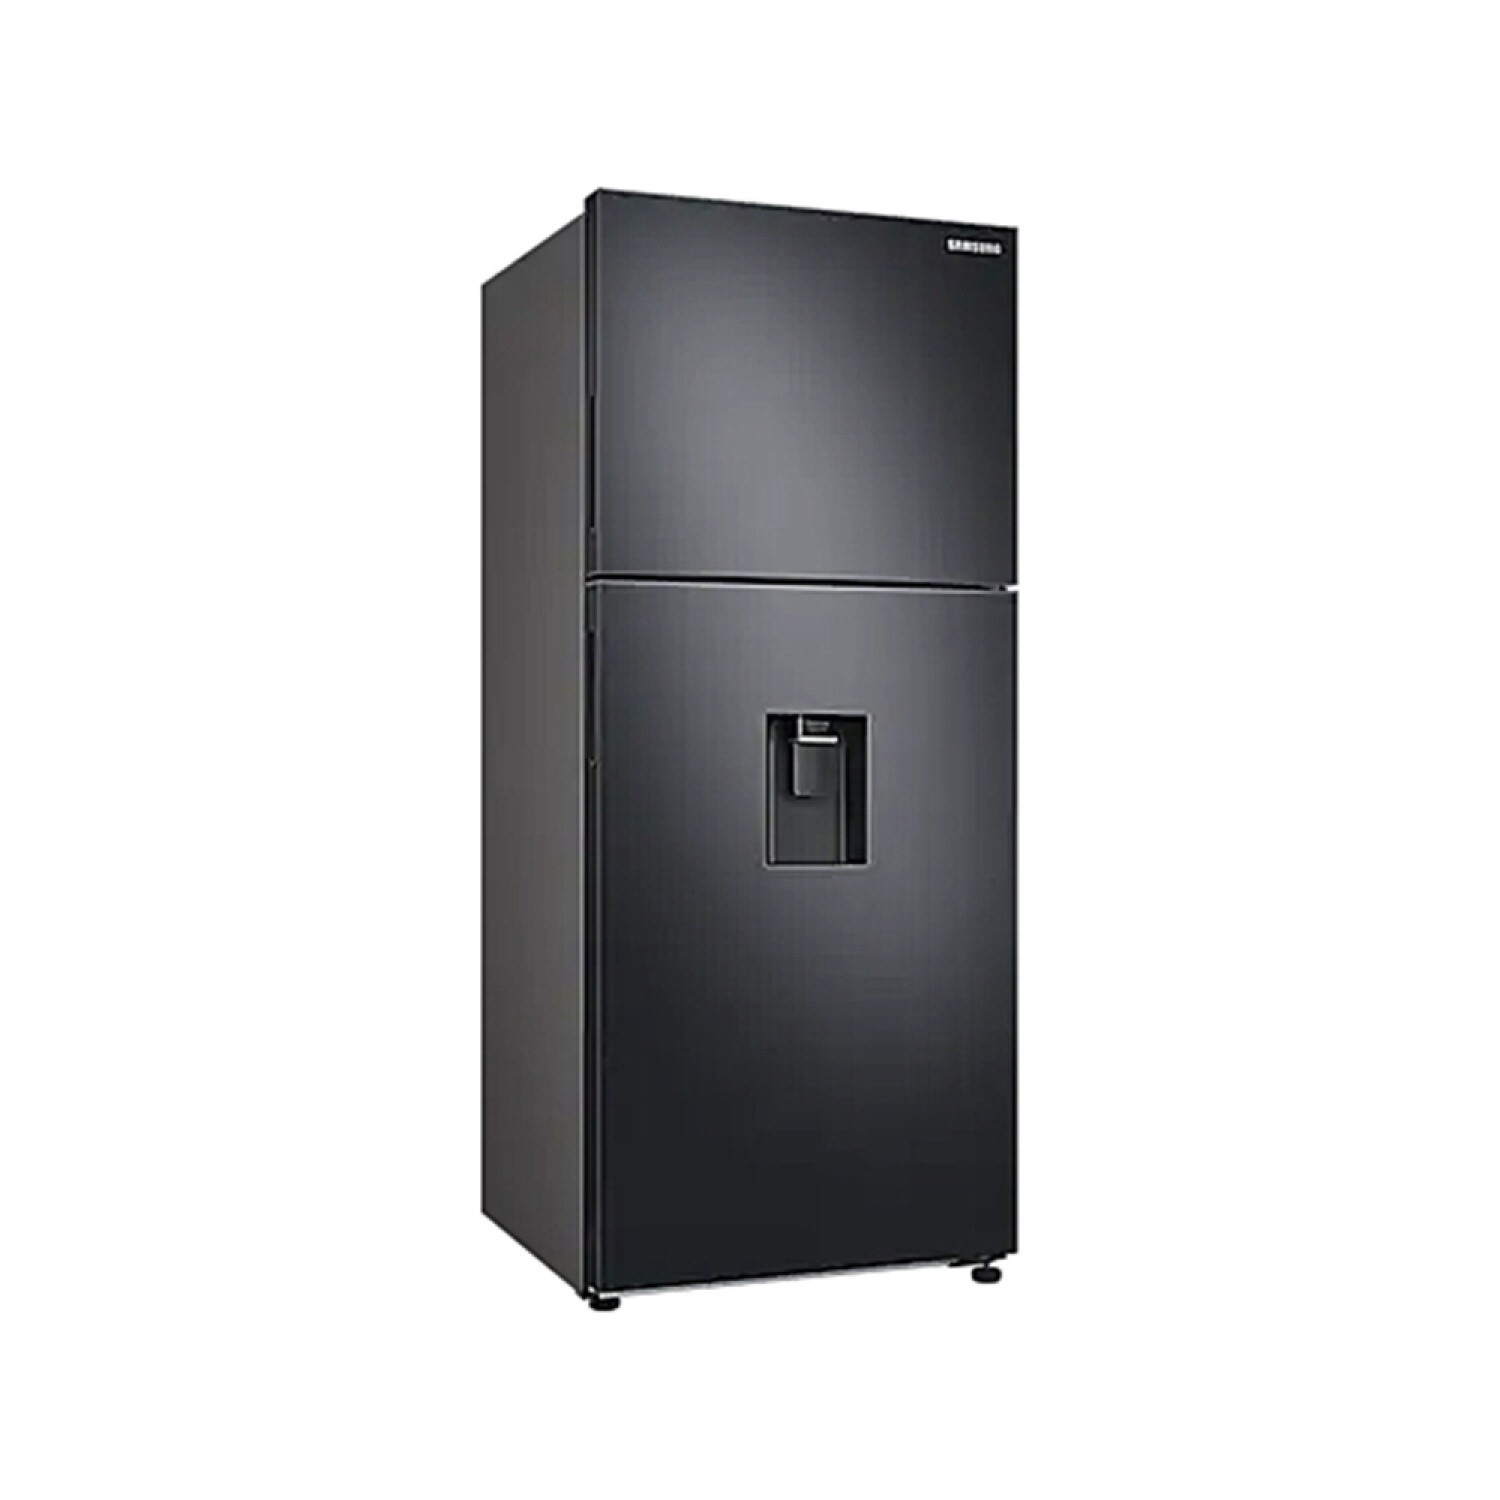 Refrigerador SAMSUNG RT44 430L Filtro Active Fresh Compresor Digital  Inverter con 10 Años de Gtía, oferta LOi.